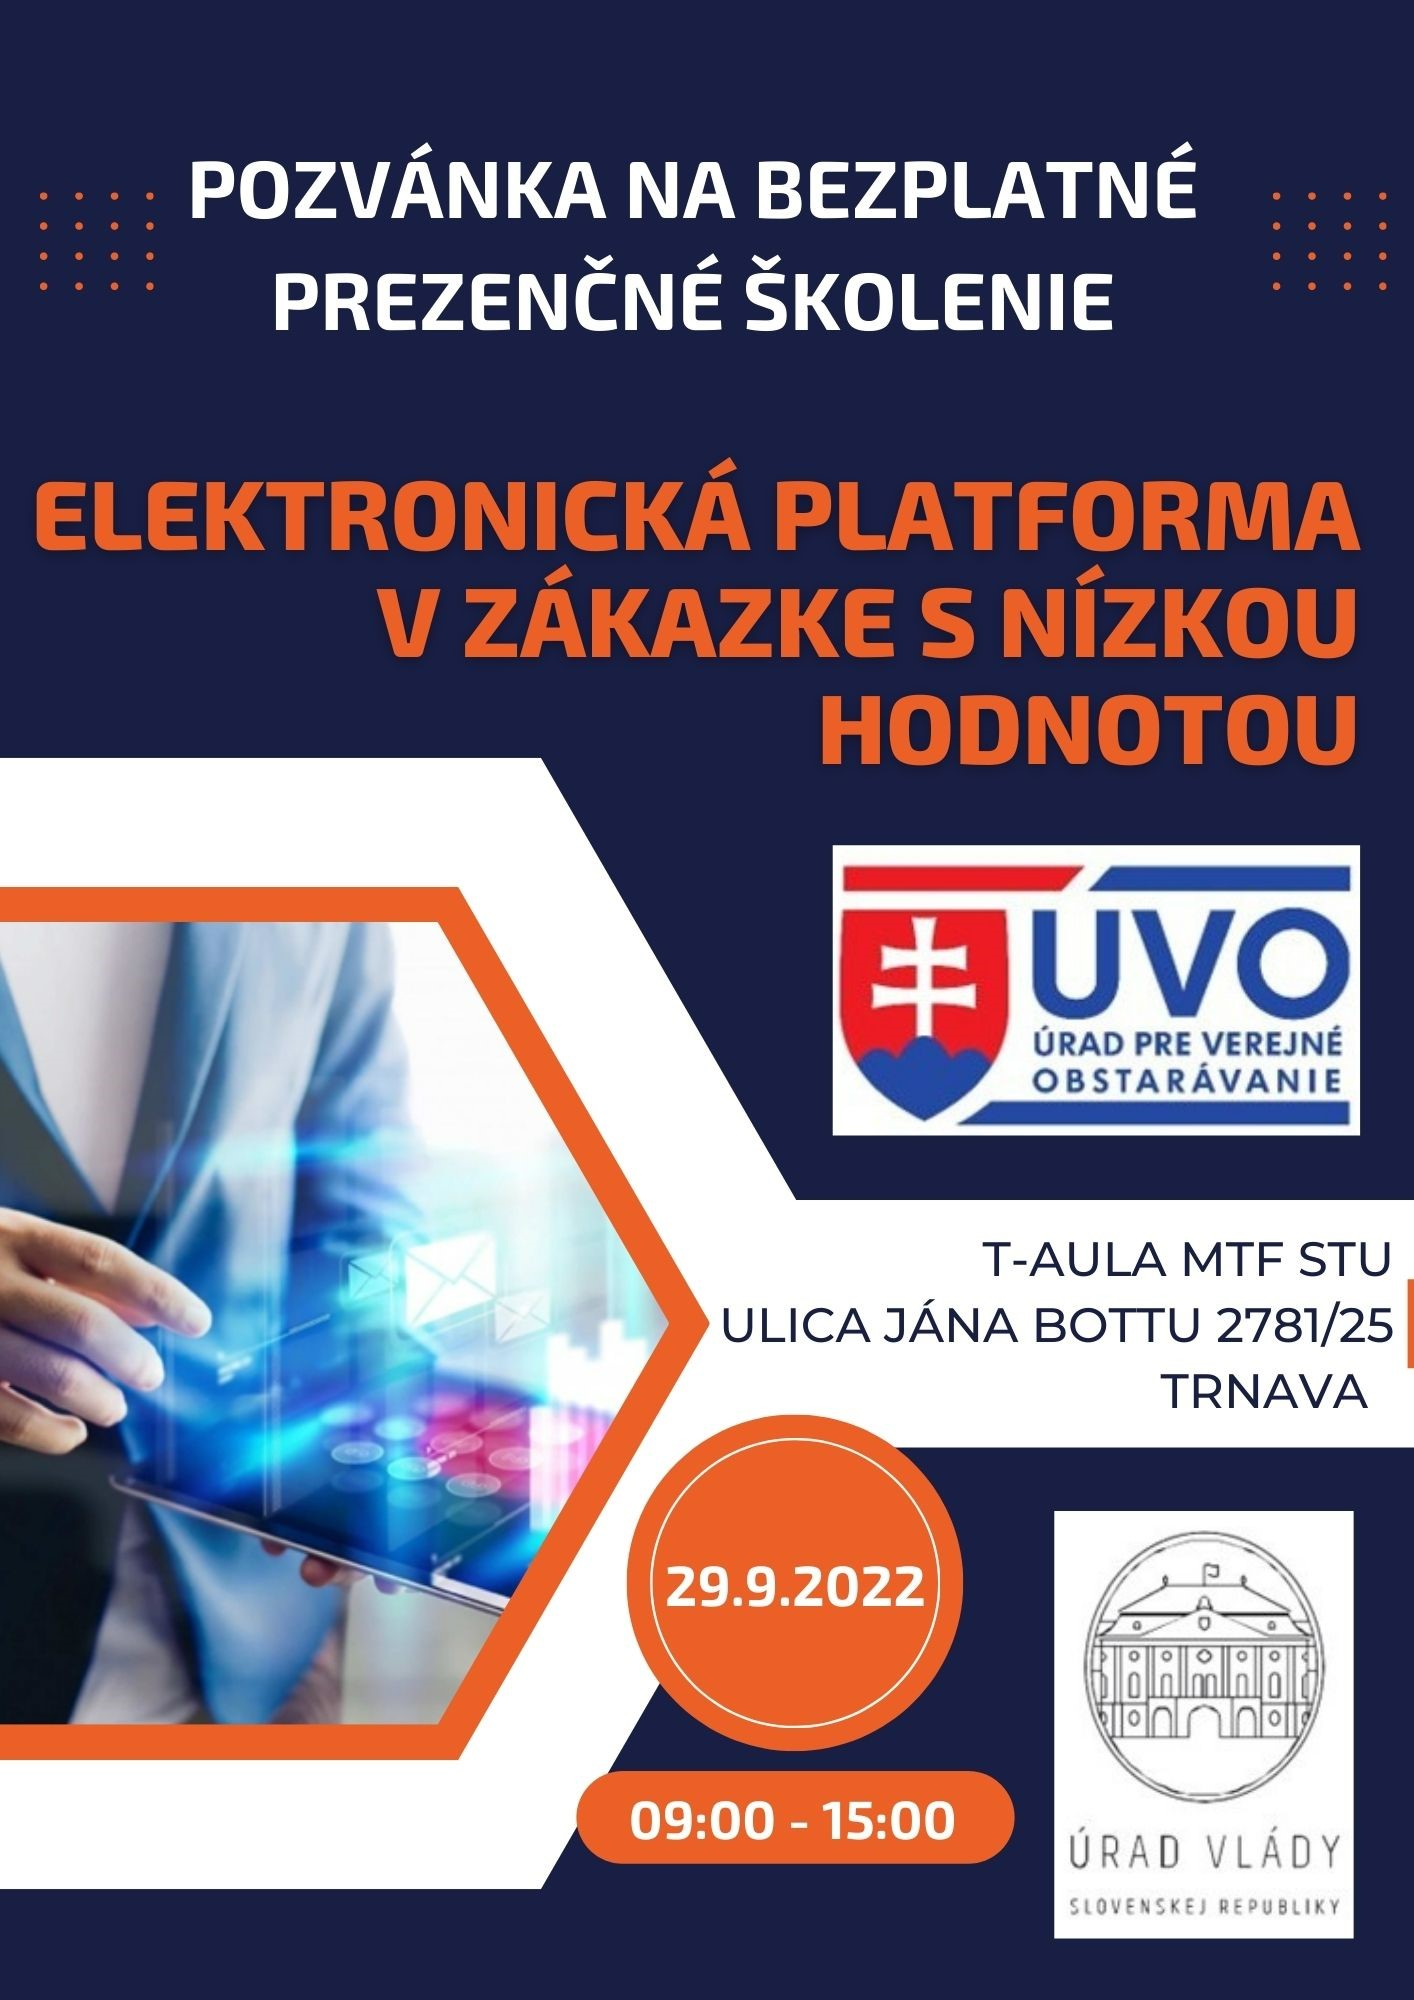 Pozvánka na prezenčné školenie „Elektronická platforma v zákazke s nízkou hodnotou“ v Trnave